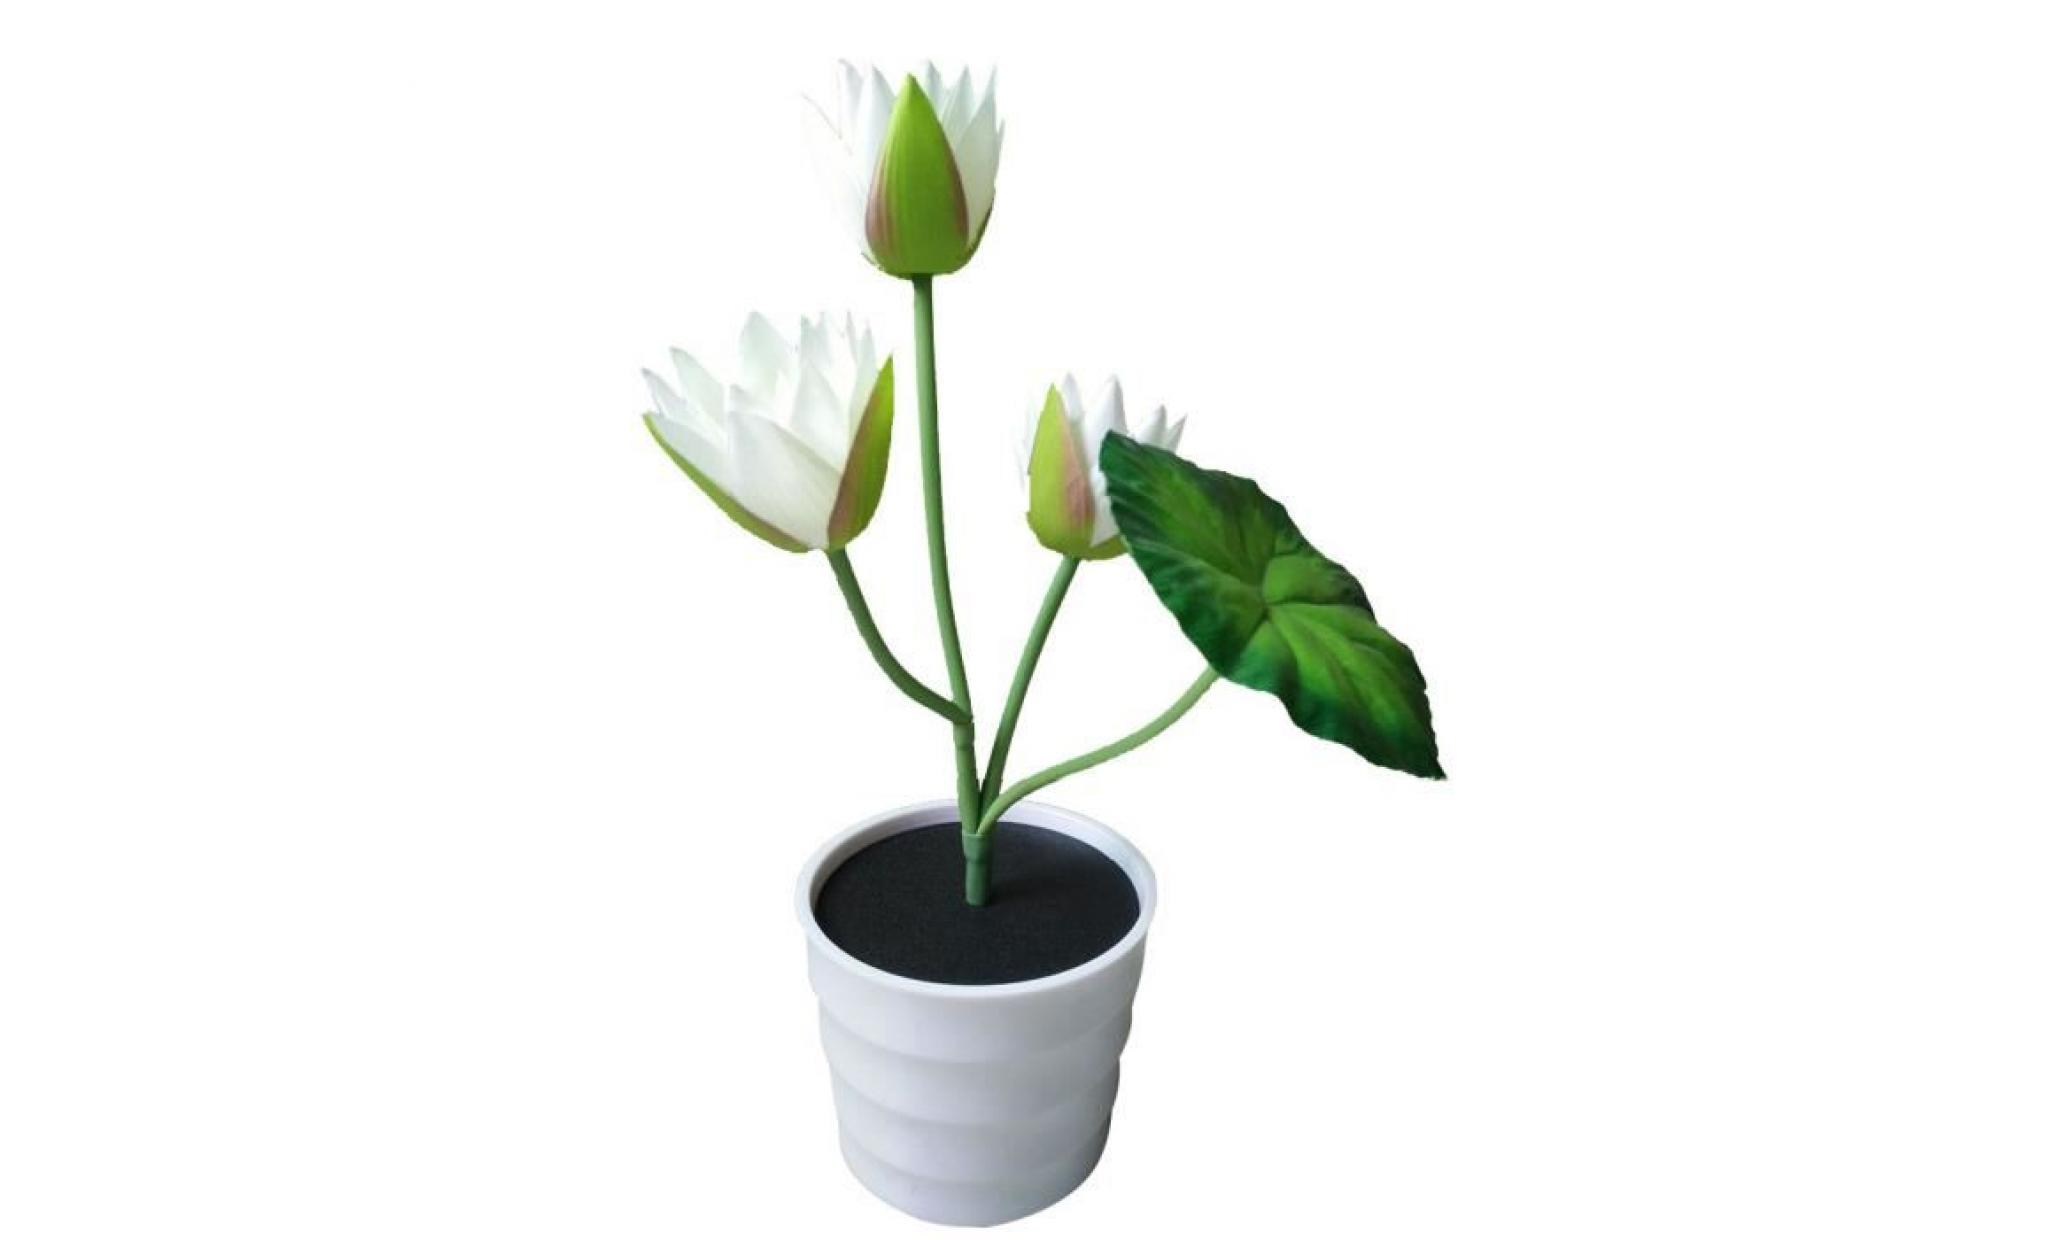 solaire lotus flower 2 lumières led artificielle lily flower pot bonsai lampe led li787@ pas cher